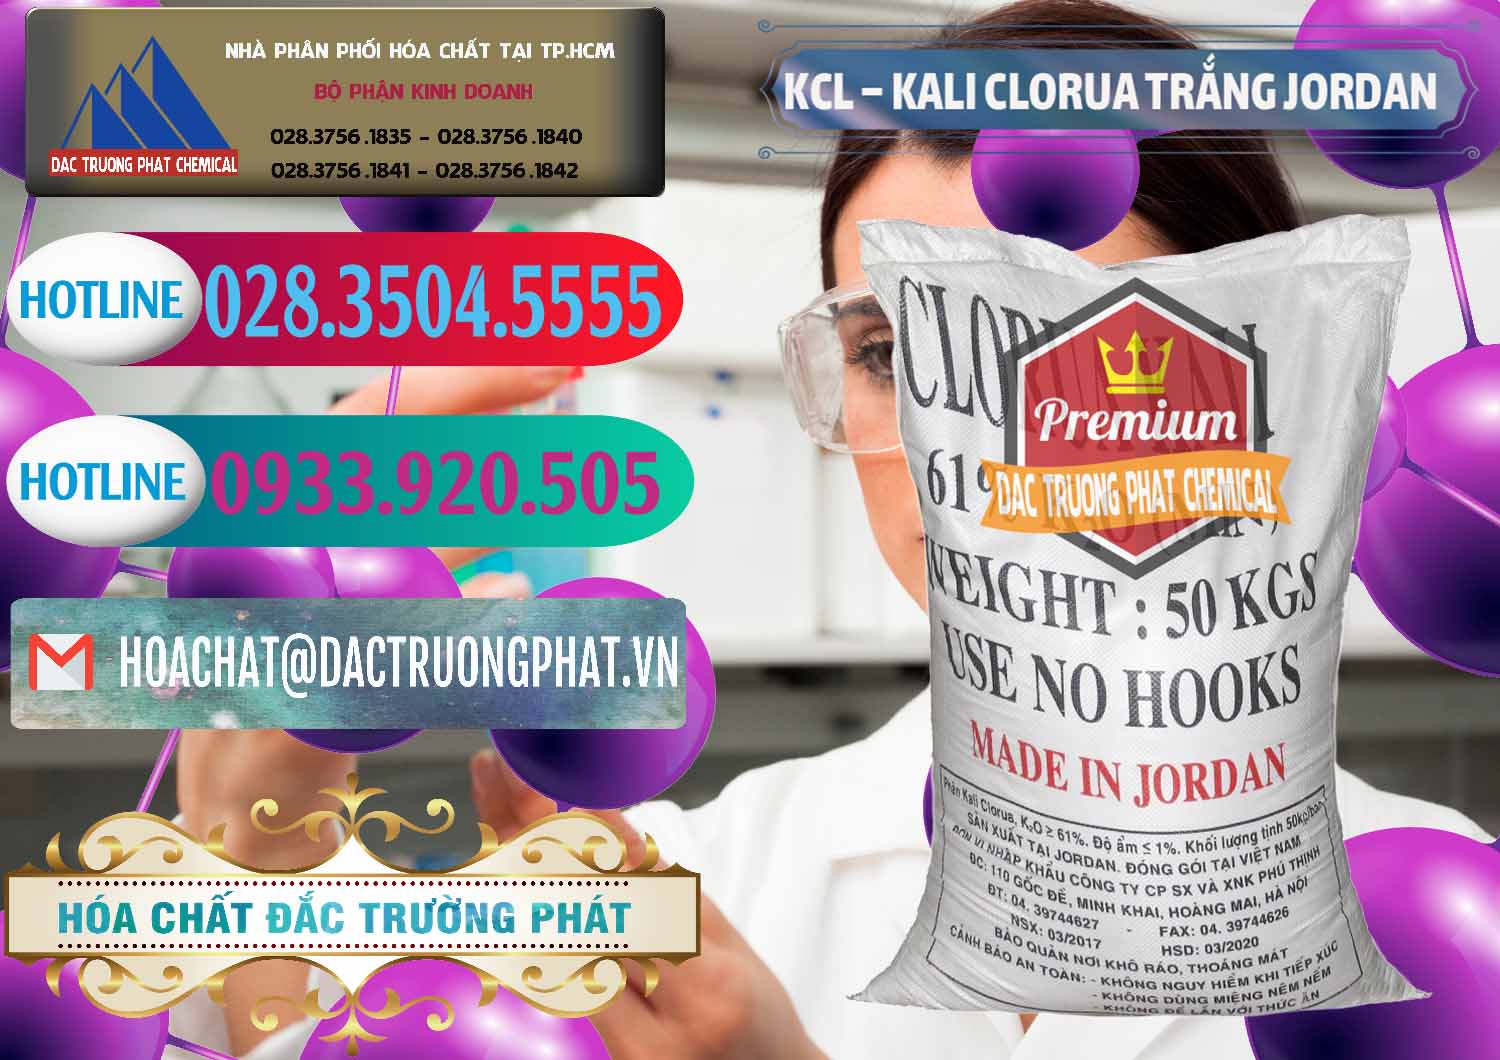 Công ty bán ( phân phối ) KCL – Kali Clorua Trắng Jordan - 0088 - Nơi cung cấp ( phân phối ) hóa chất tại TP.HCM - truongphat.vn